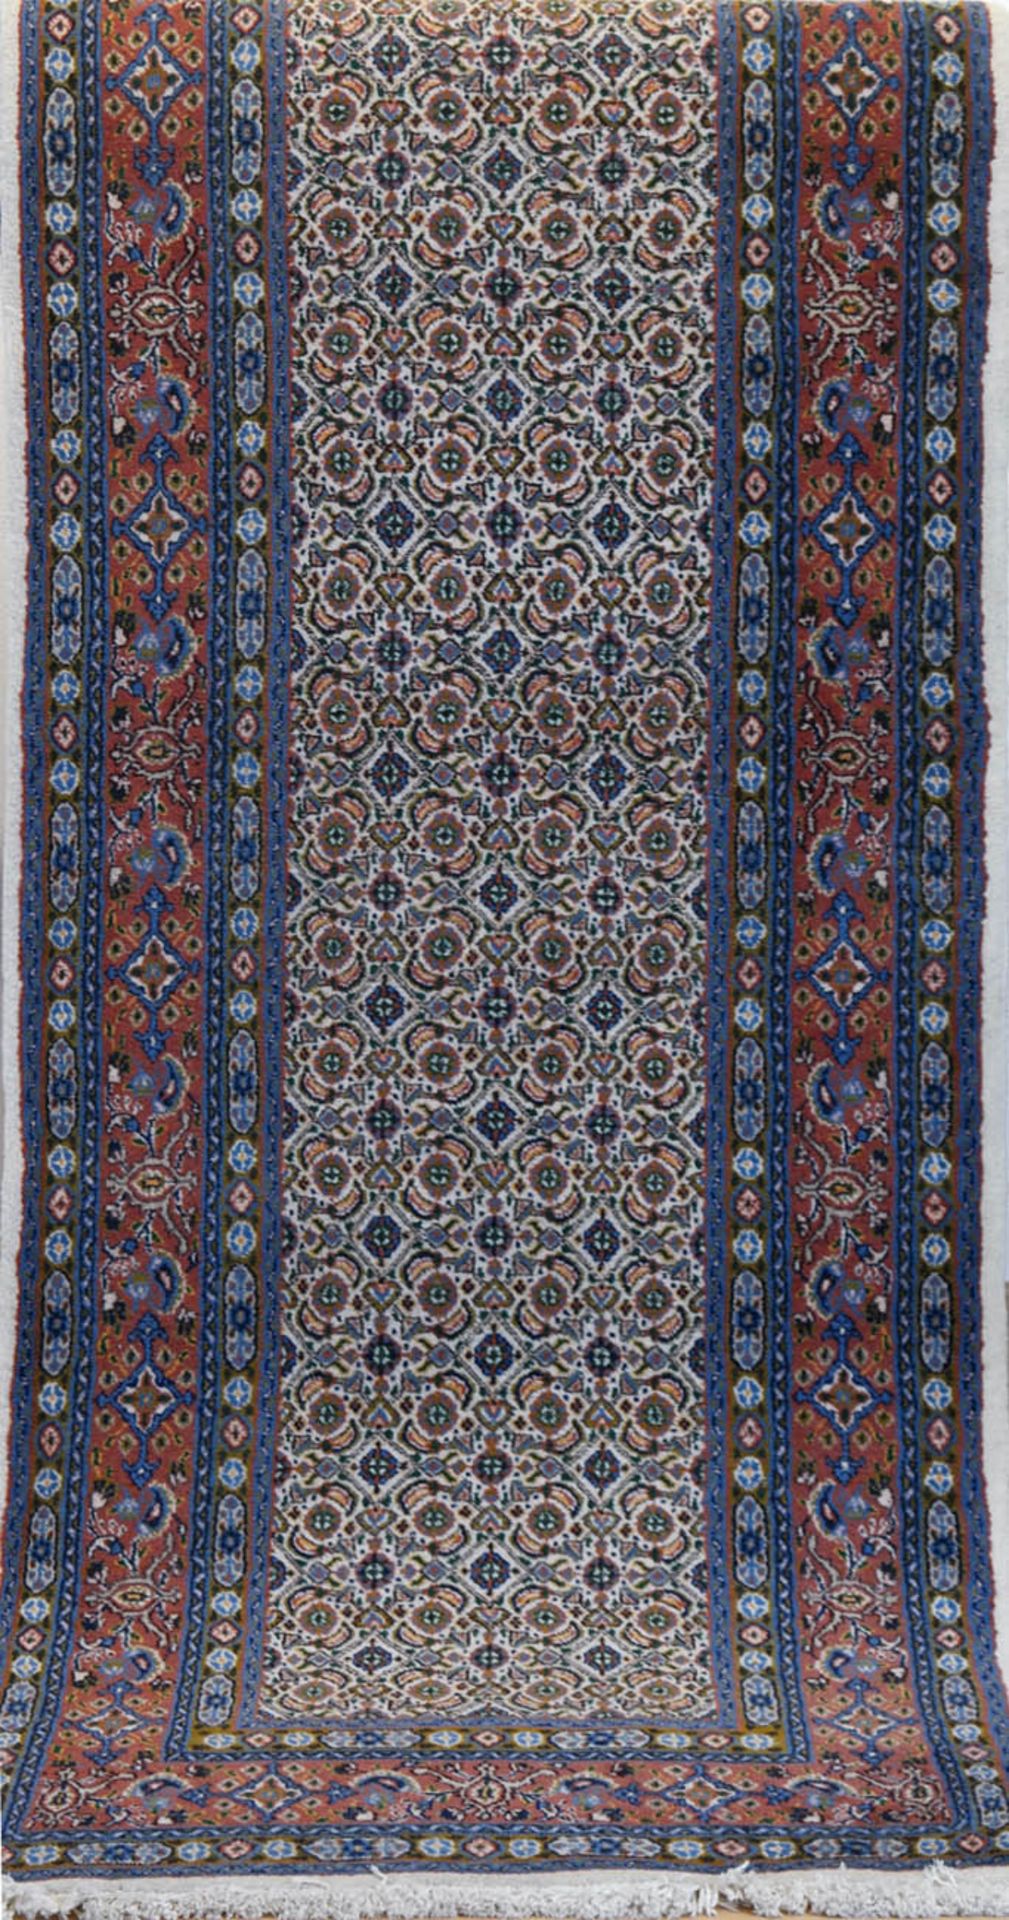 Teppich, Persien, rot-/ blaugrundig, mit durchgehendem Muster, guter Zustand, Reinigung empfohlen, 